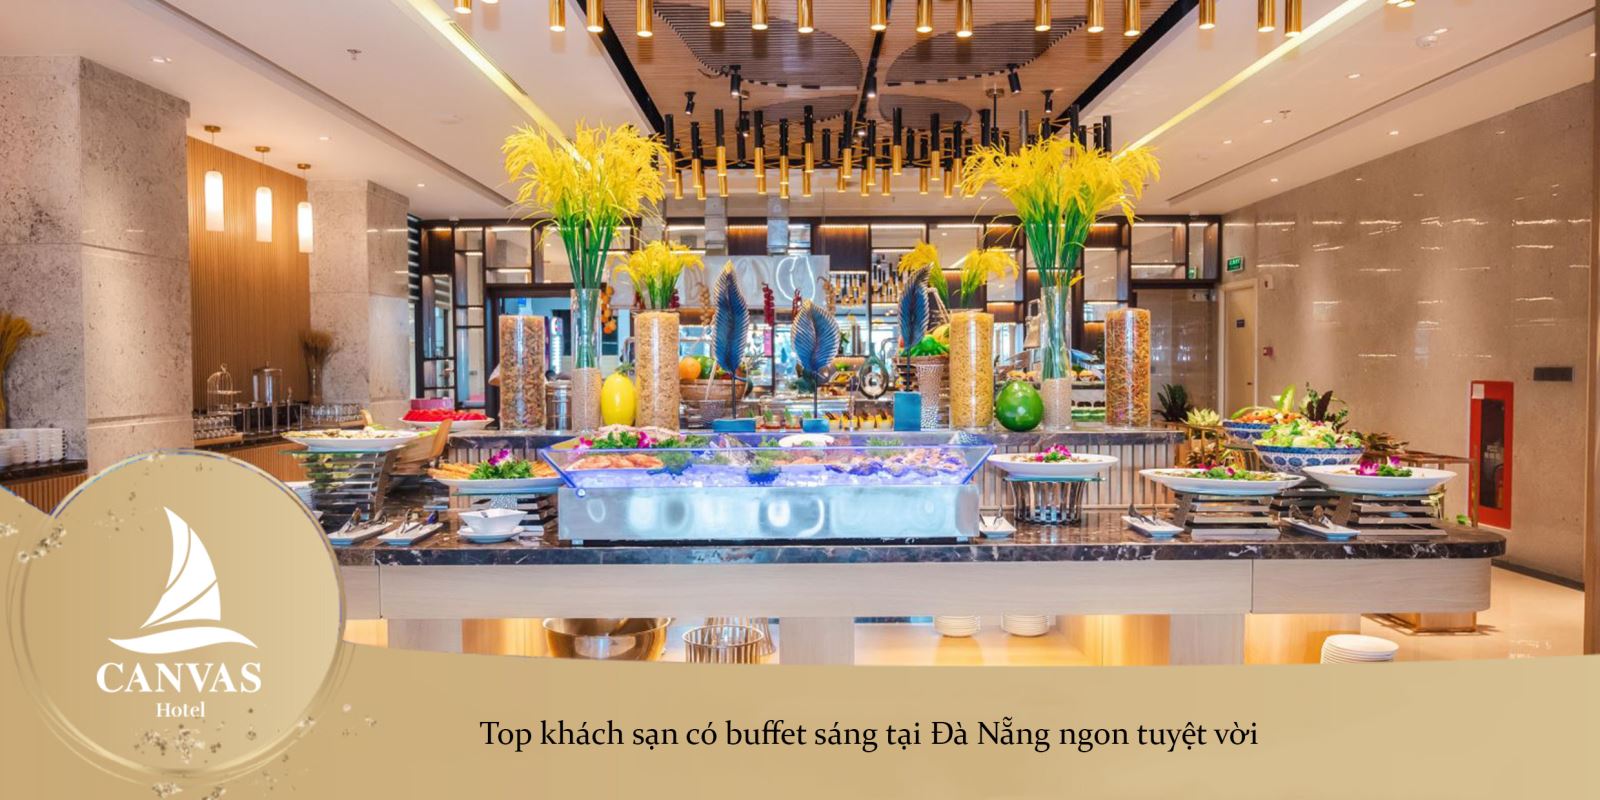 Top khách sạn có buffet sáng tại Đà Nẵng ngon tuyệt vời